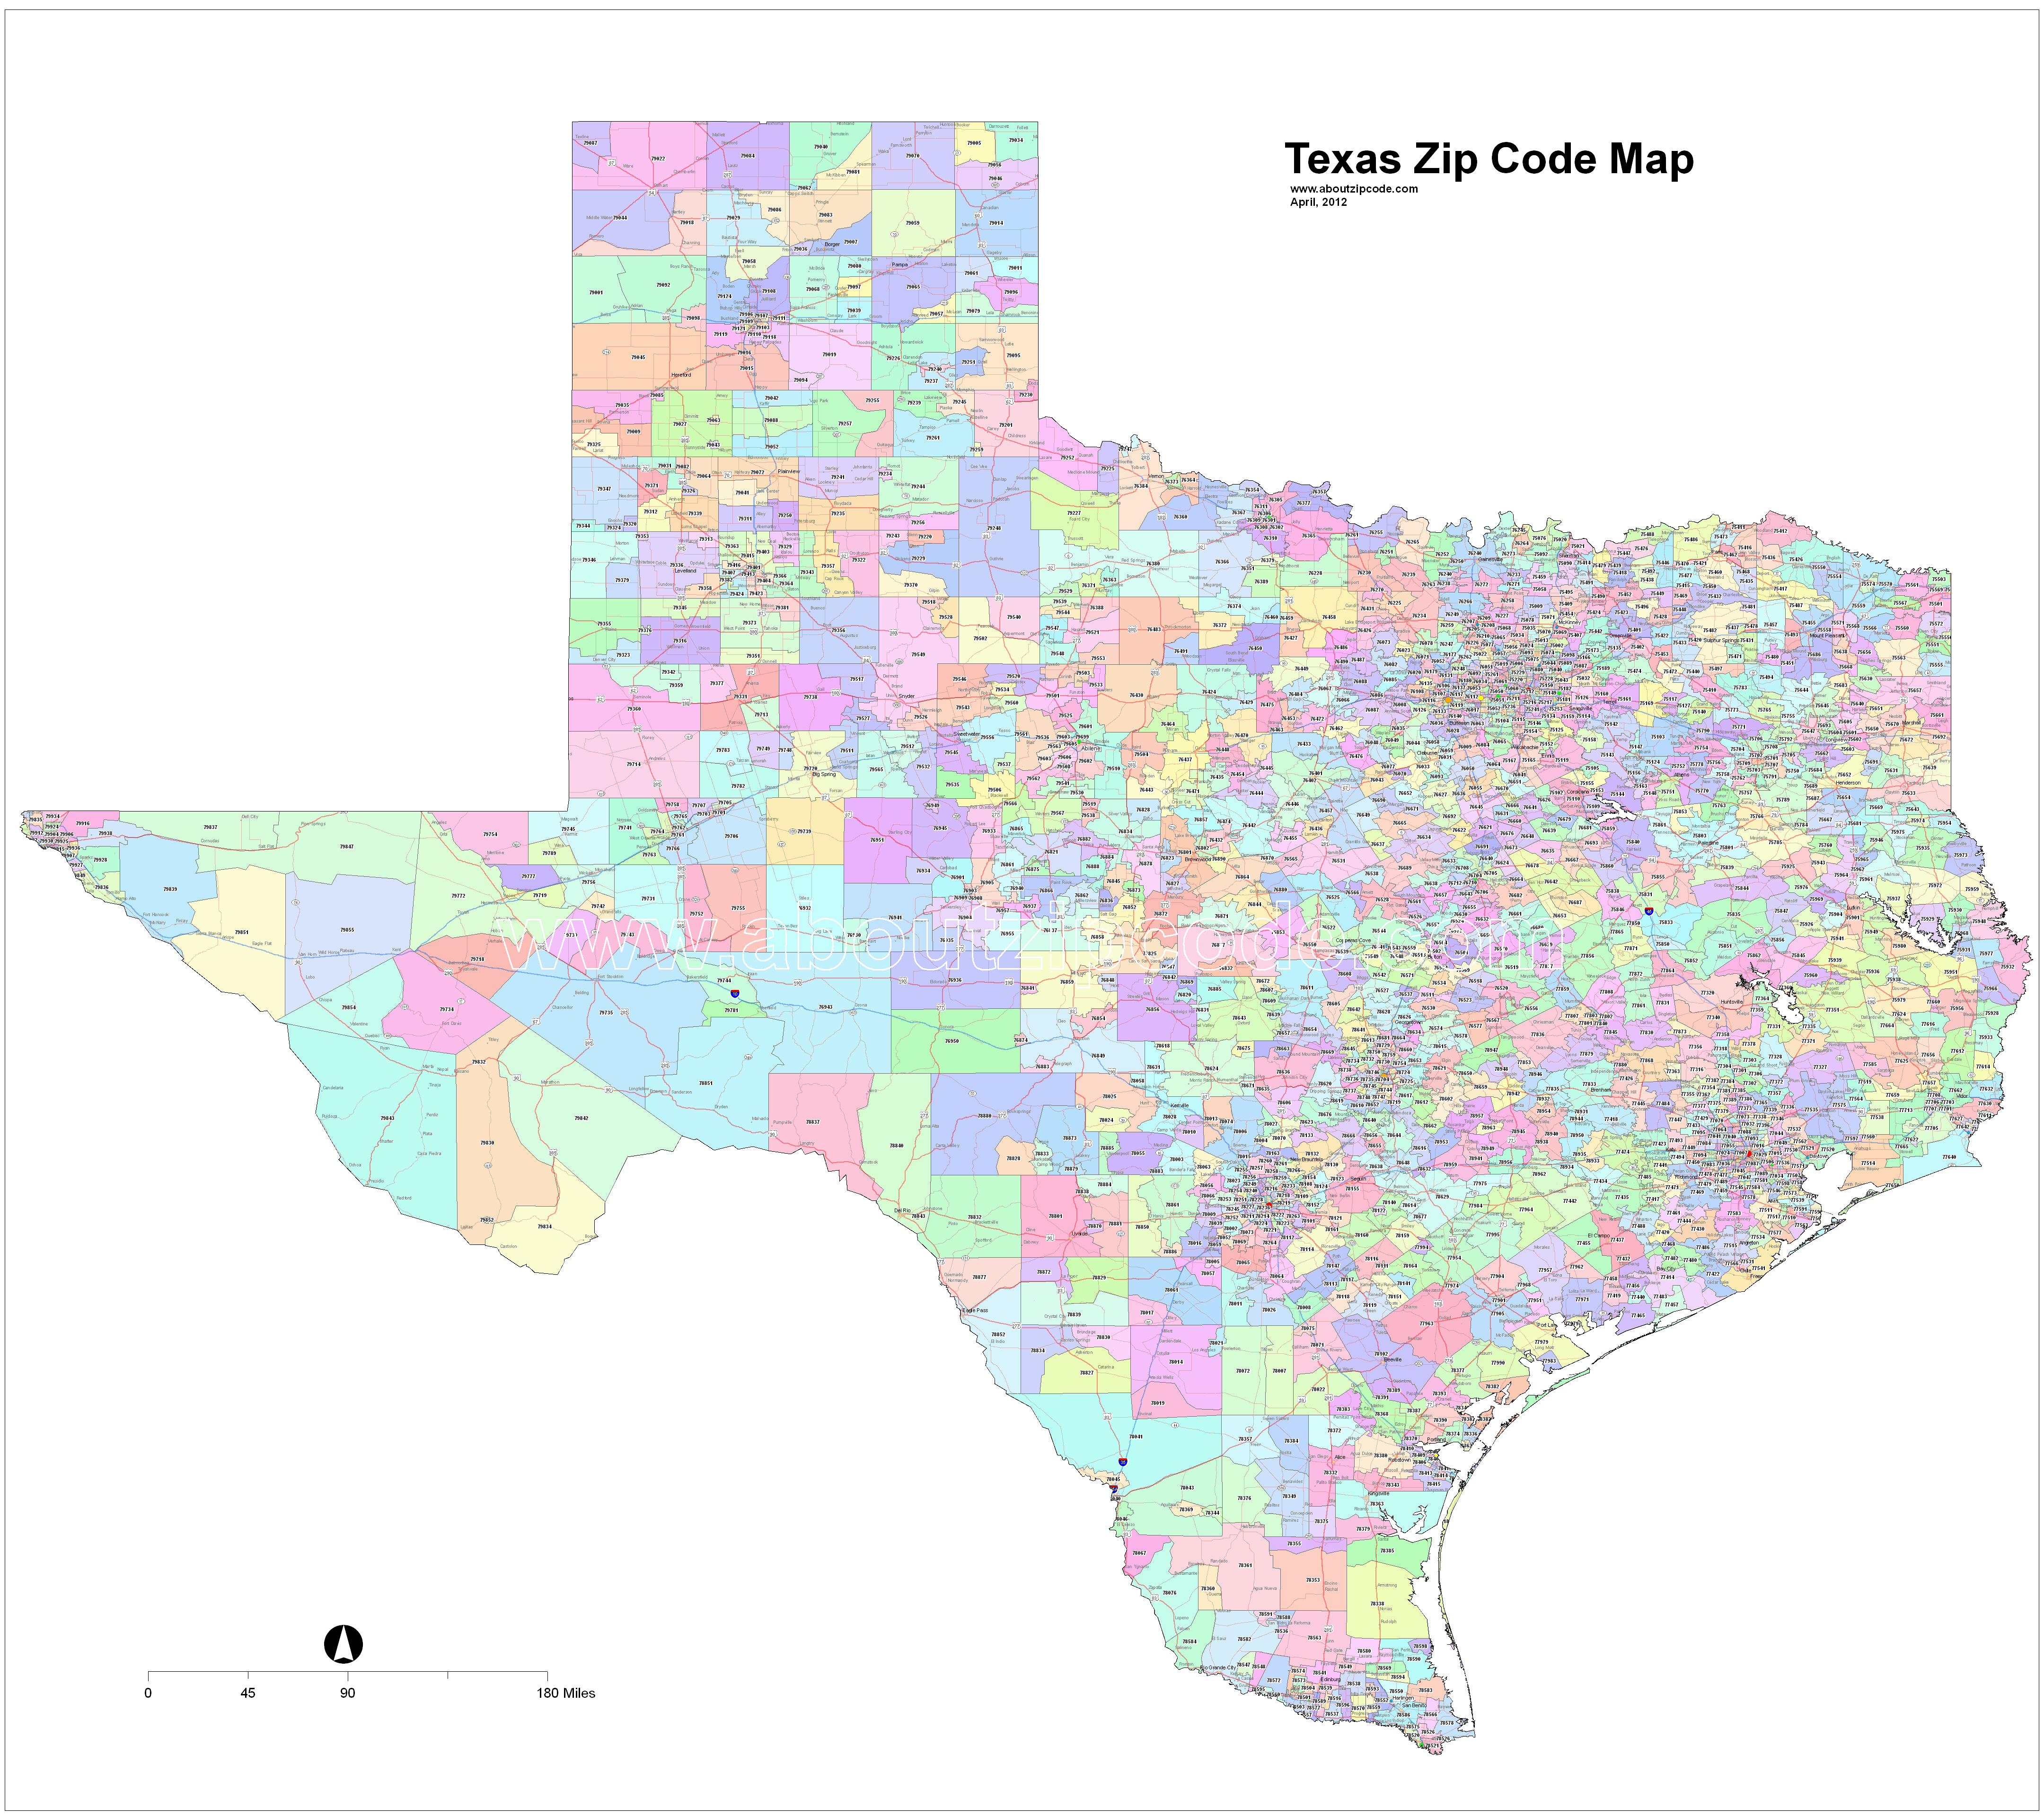 Texas Zip Code Maps Free Texas Zip Code Maps. www.aboutzipcode.com. 